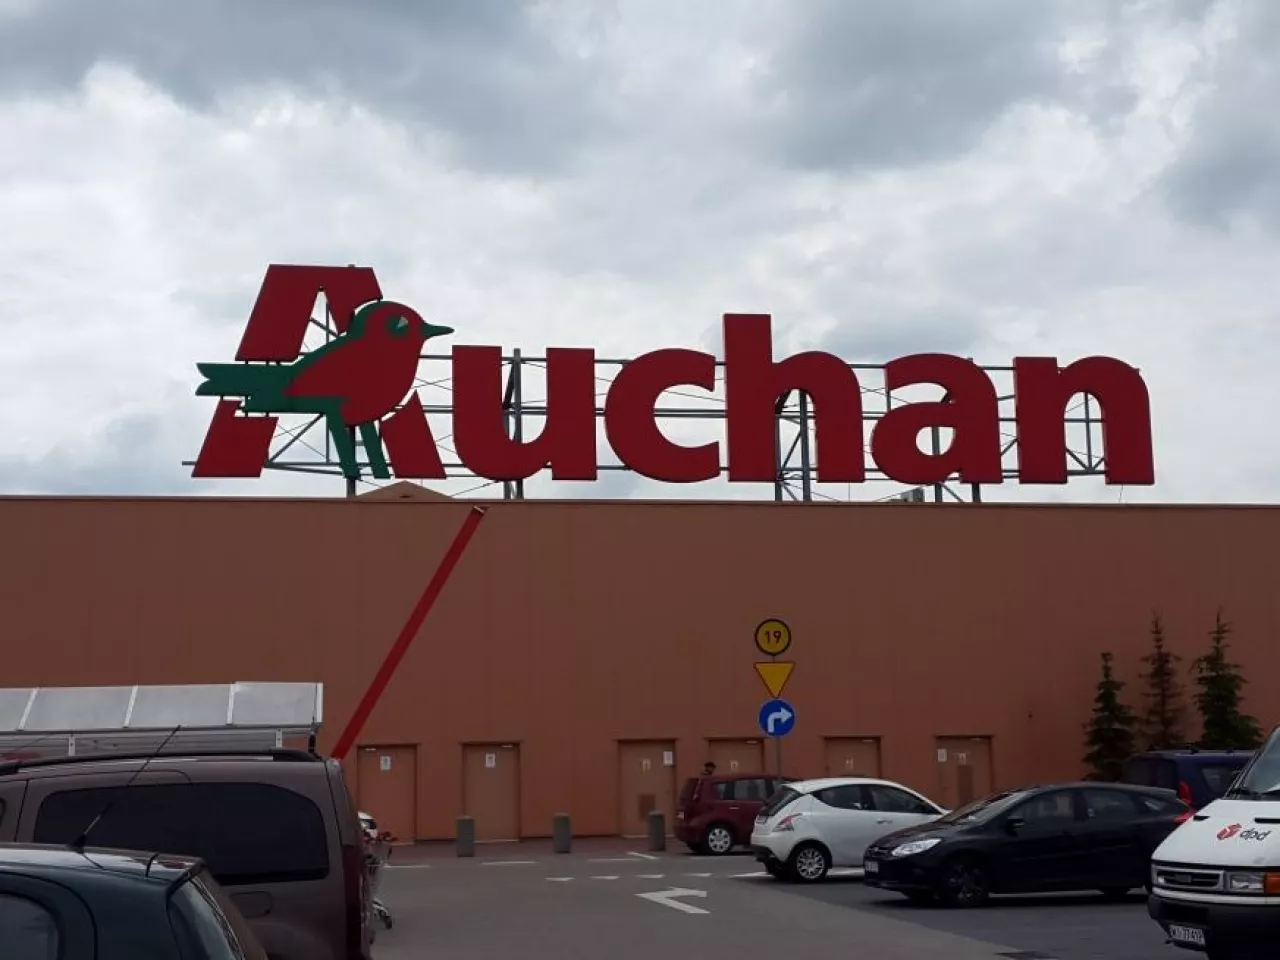 Auchan jest już na finiszu integracji sklepów Real ze swoimi placówkami w Polsce (fot. wiadomoscihandlowe.pl)